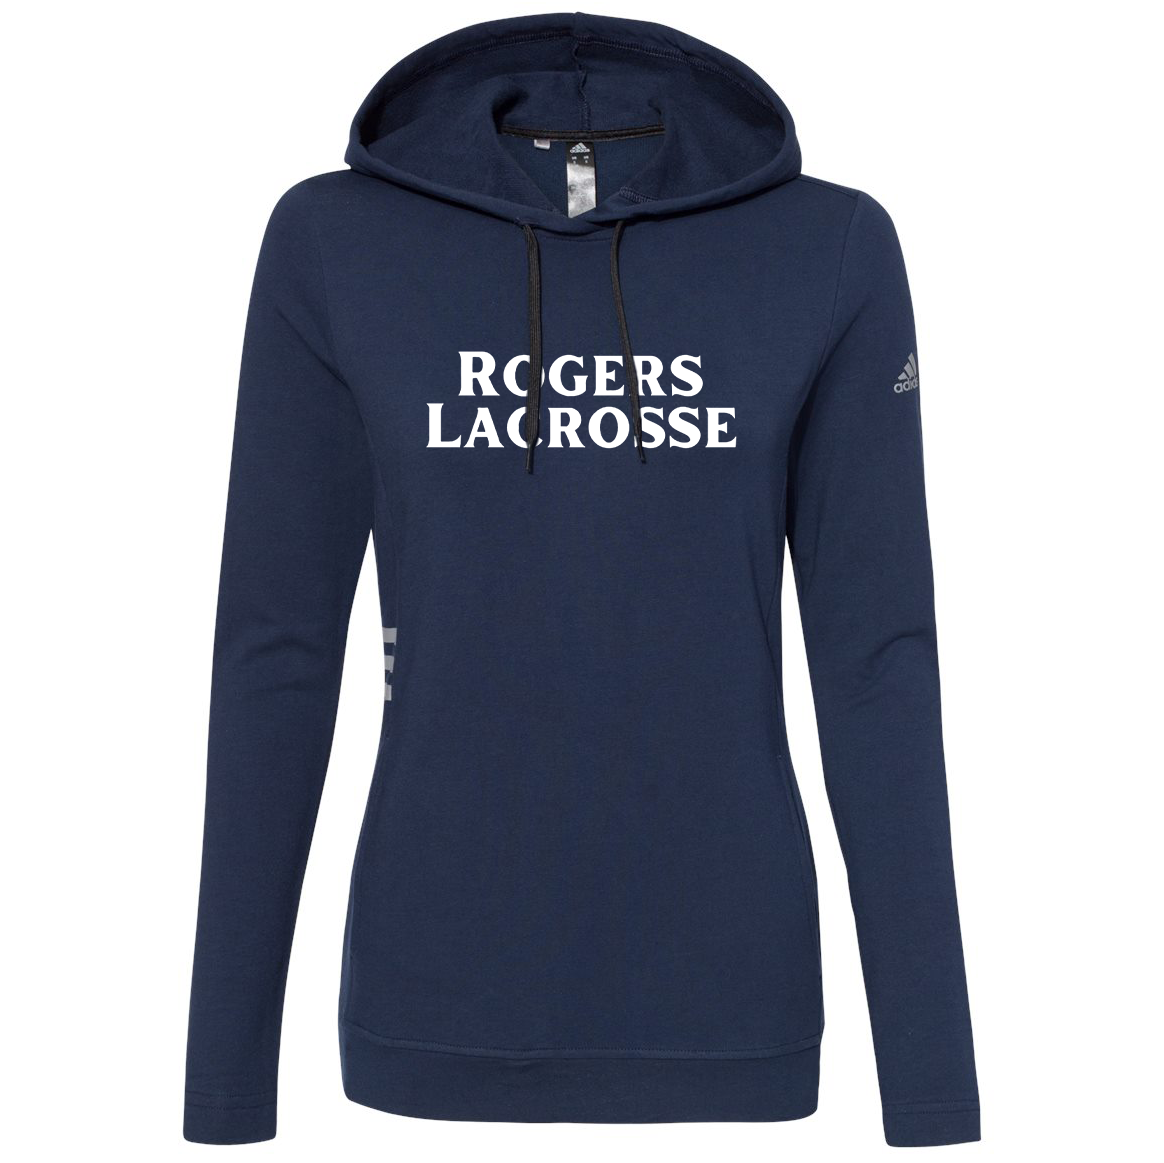 Rogers Lacrosse Adidas Women's Sweatshirt